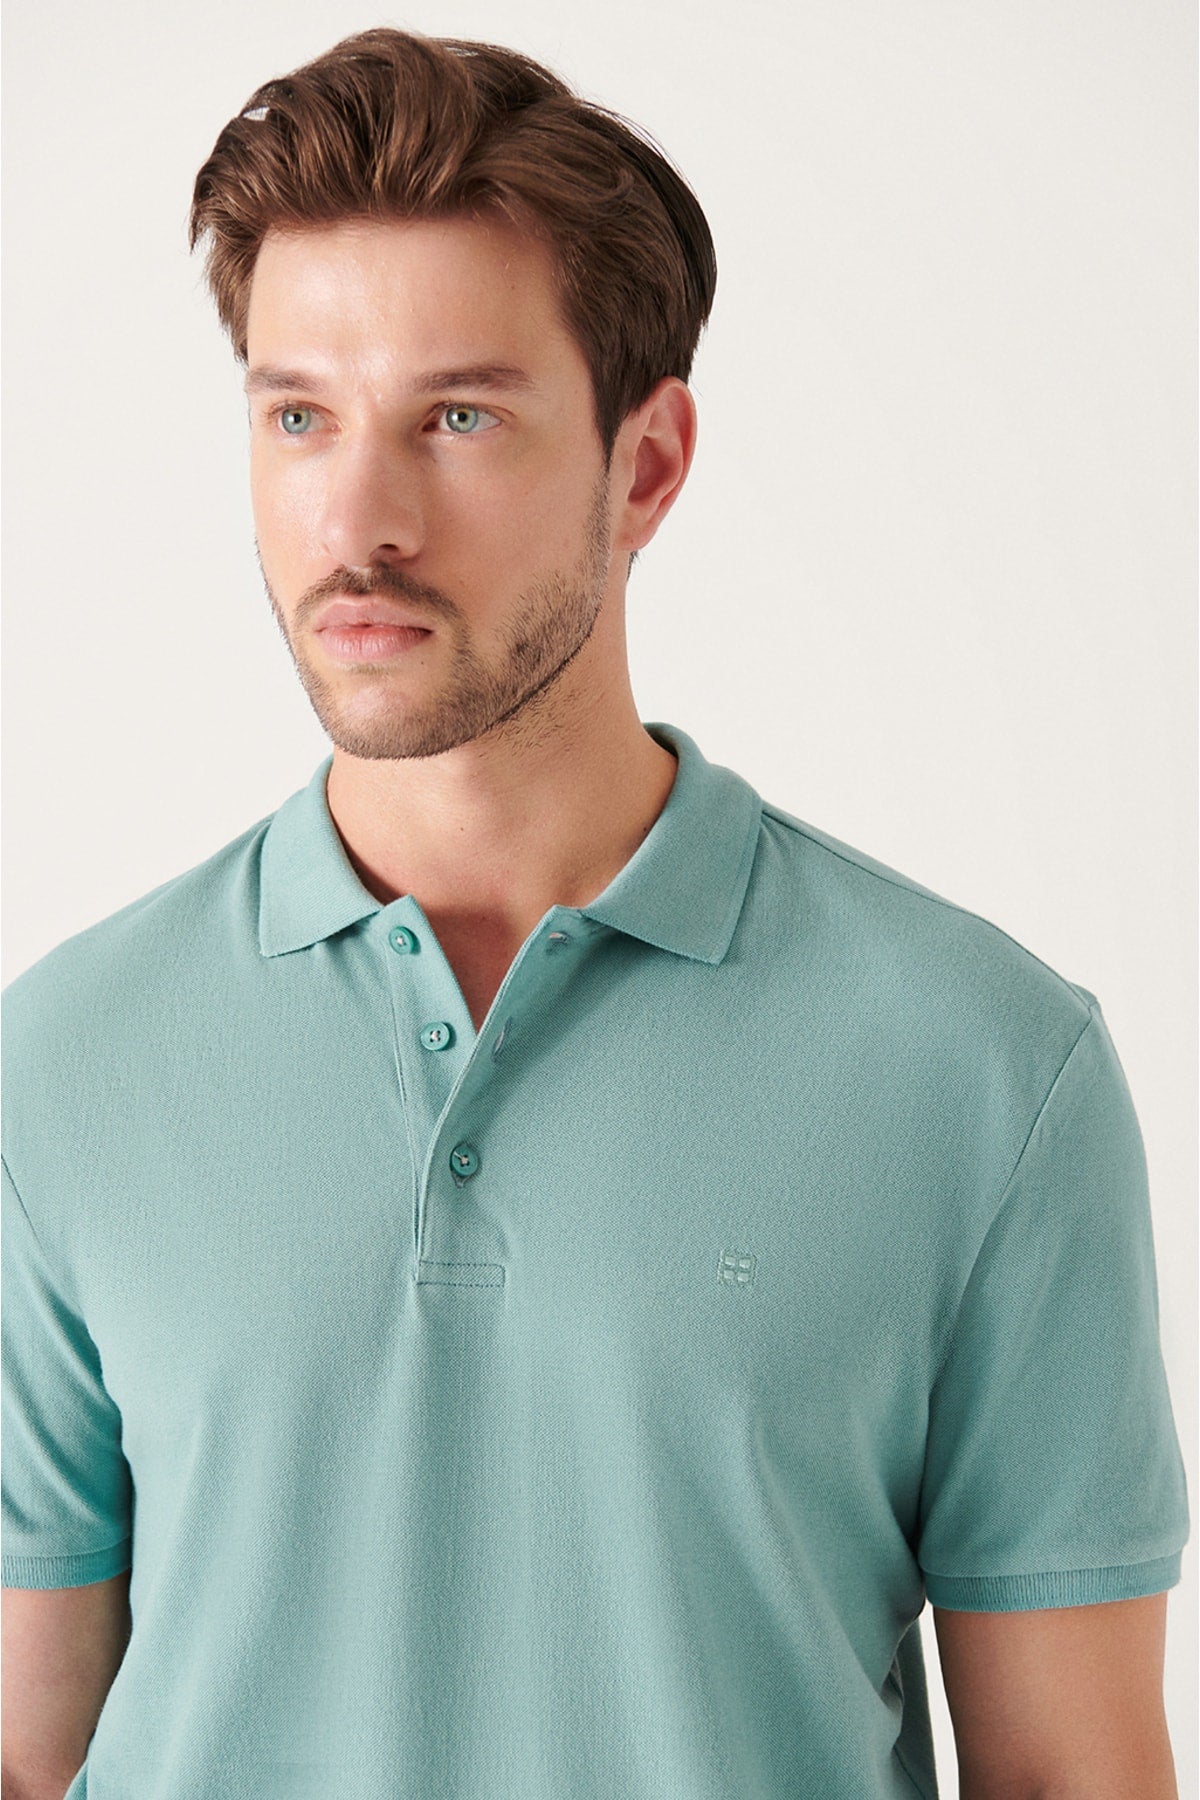  Мужская футболка цвета морской волны 100% хлопок, дышащая, стандартного кроя, нормального покроя, с вырезом поло, футболка E001004